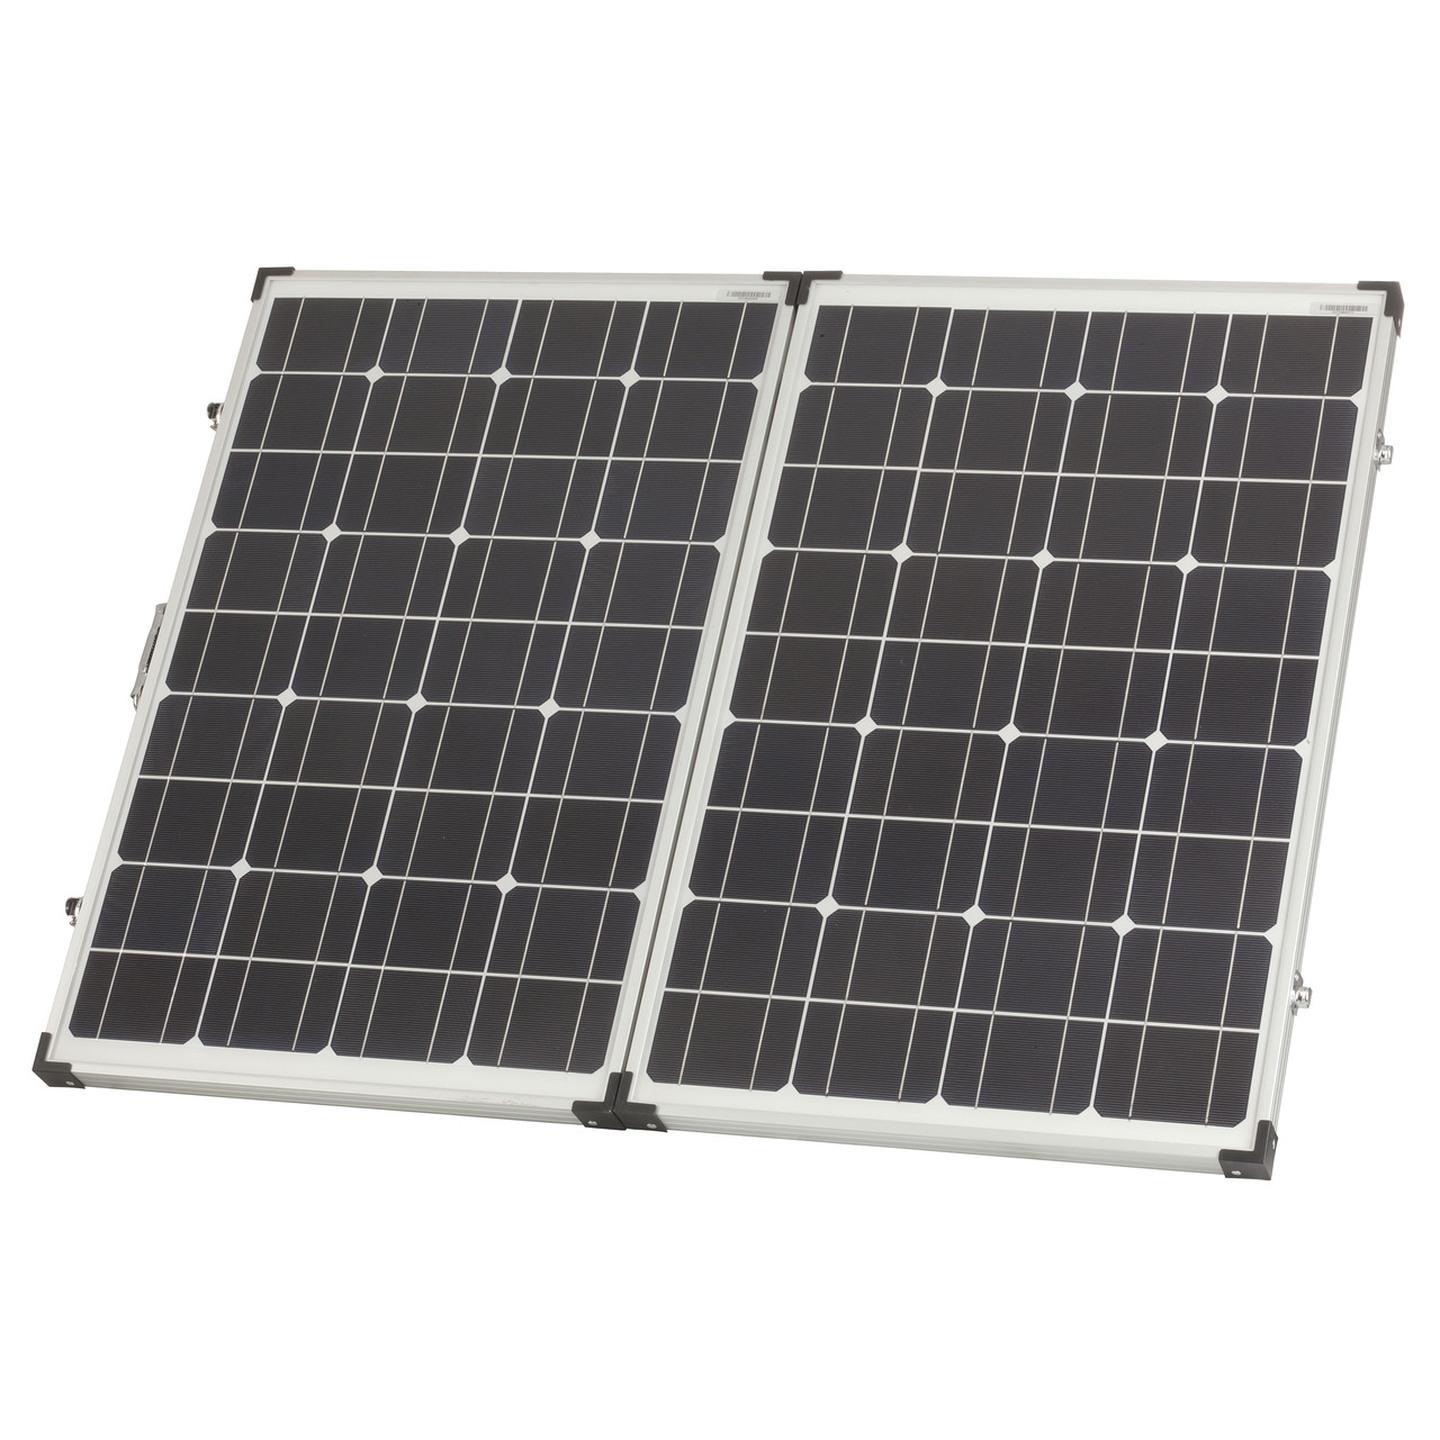 Manufacturer Refurbished 120W Portable Fold-Up Solar Panel